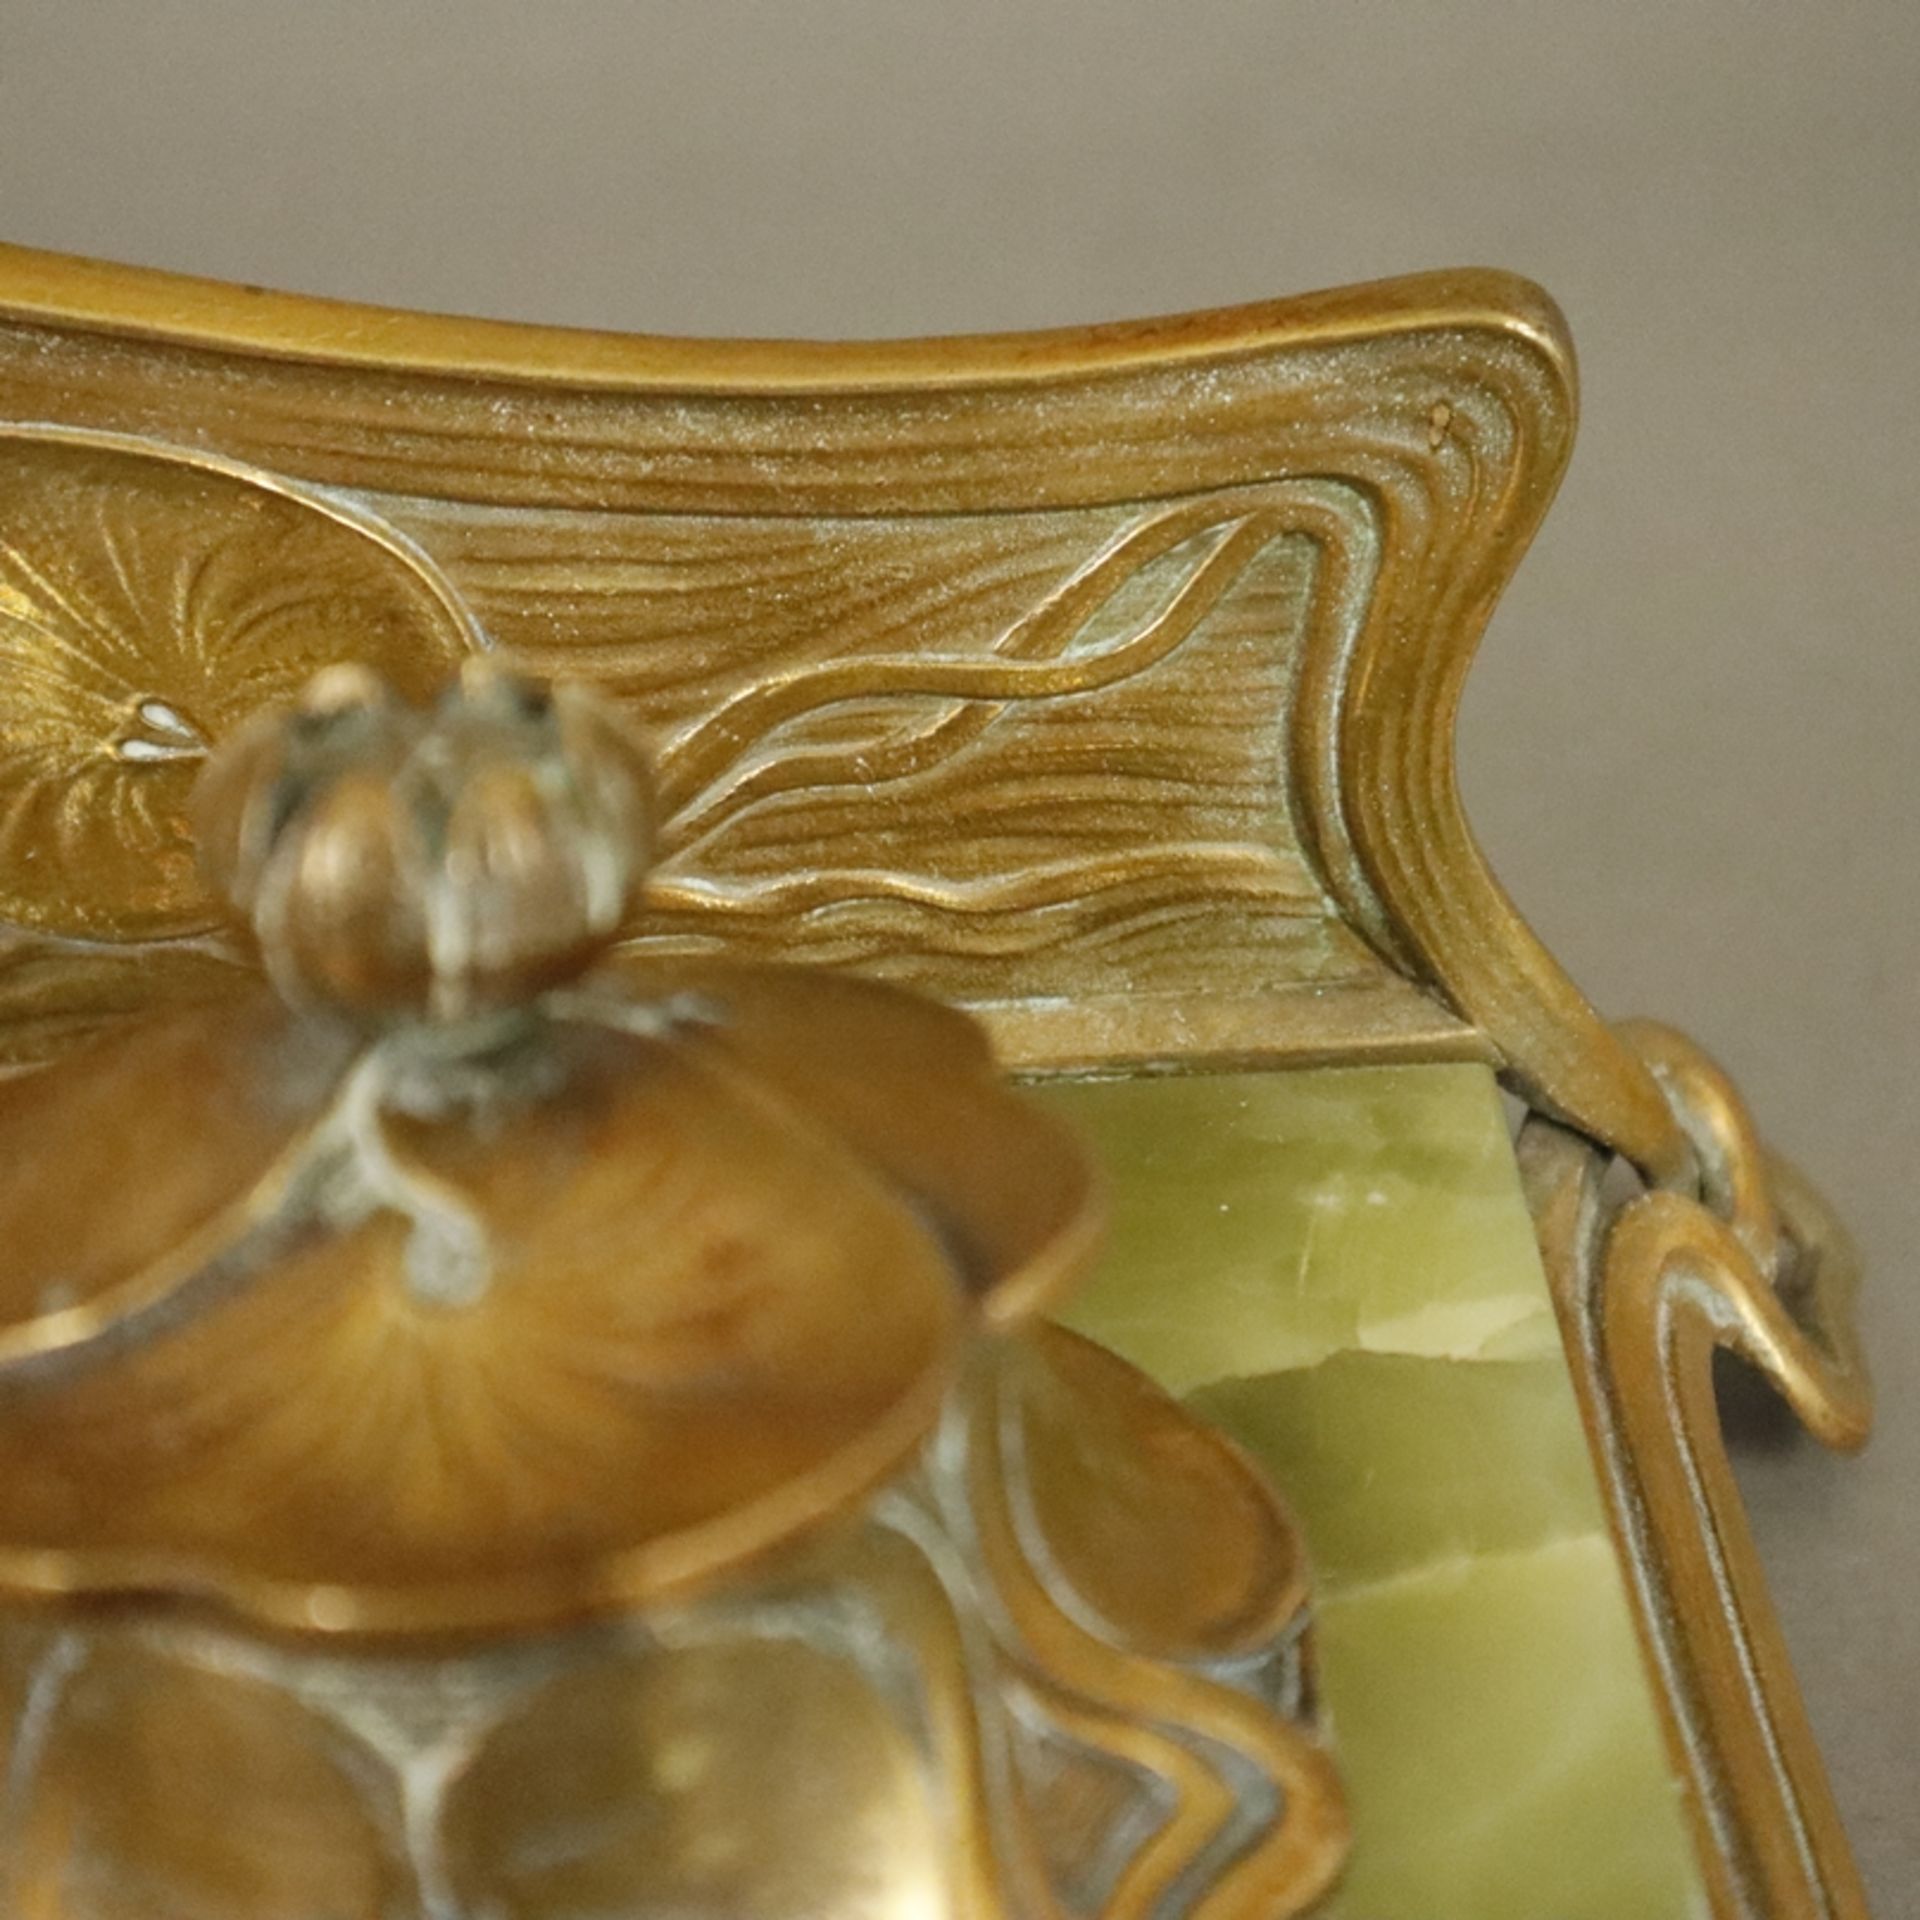 Jugendstil-Schreibtischgarnitur - um 1900/10, geschwungenes Bronzegestell mit Seerosen-Reliefdekor, - Bild 5 aus 12